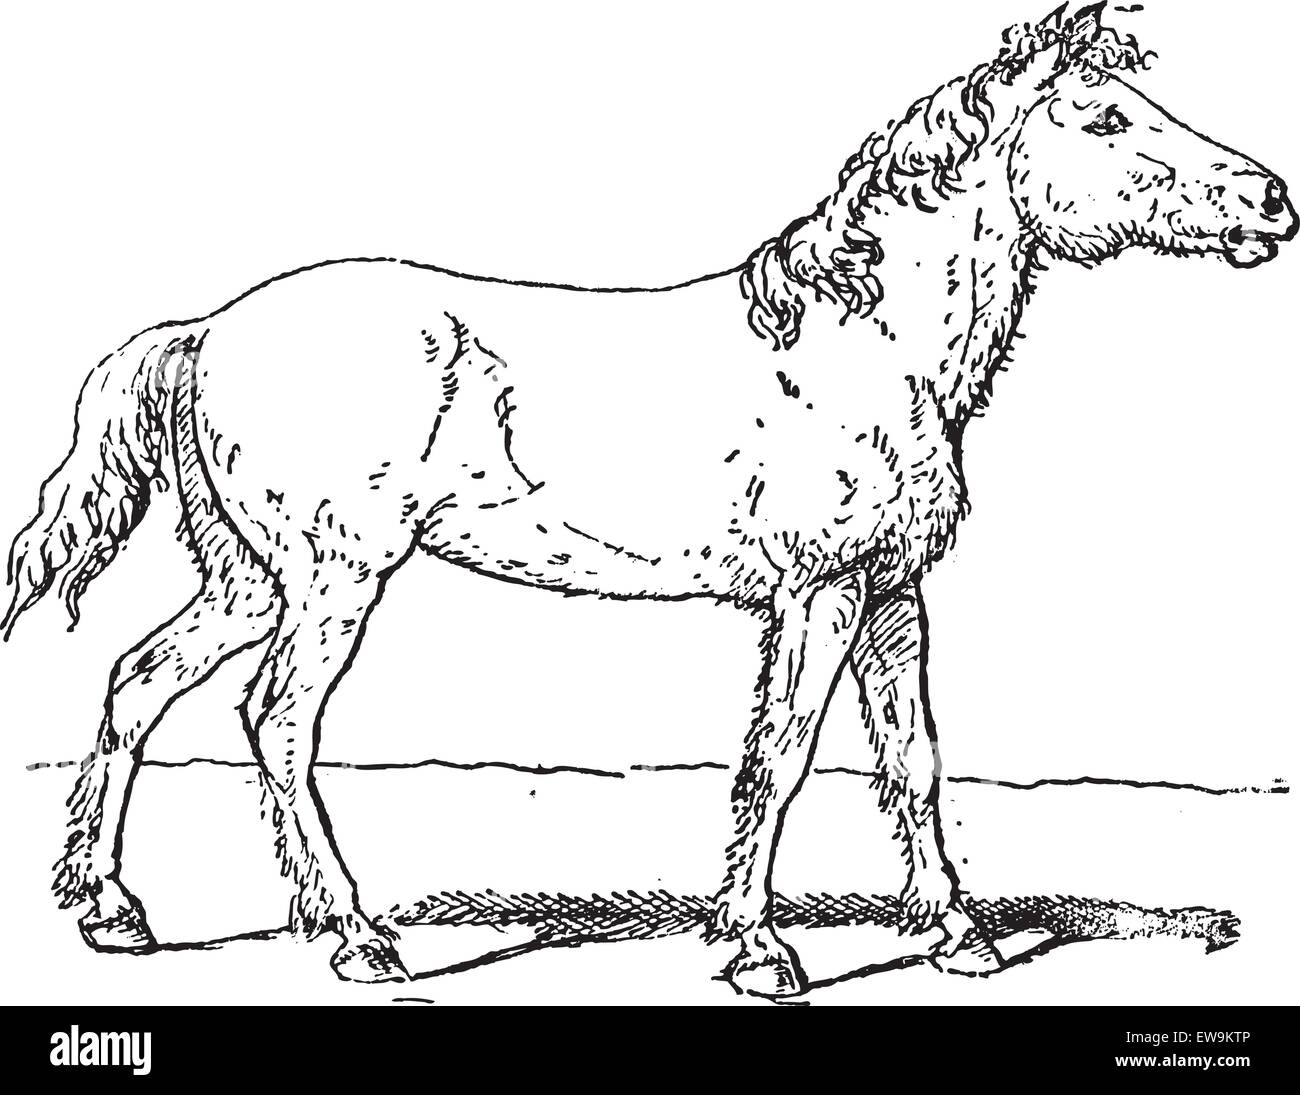 Old engraved illustration of Tarpan or Equus ferus ferus or Eurasian wild horse or Equus silvaticus or Equus gmelini.  Dictionar Stock Vector